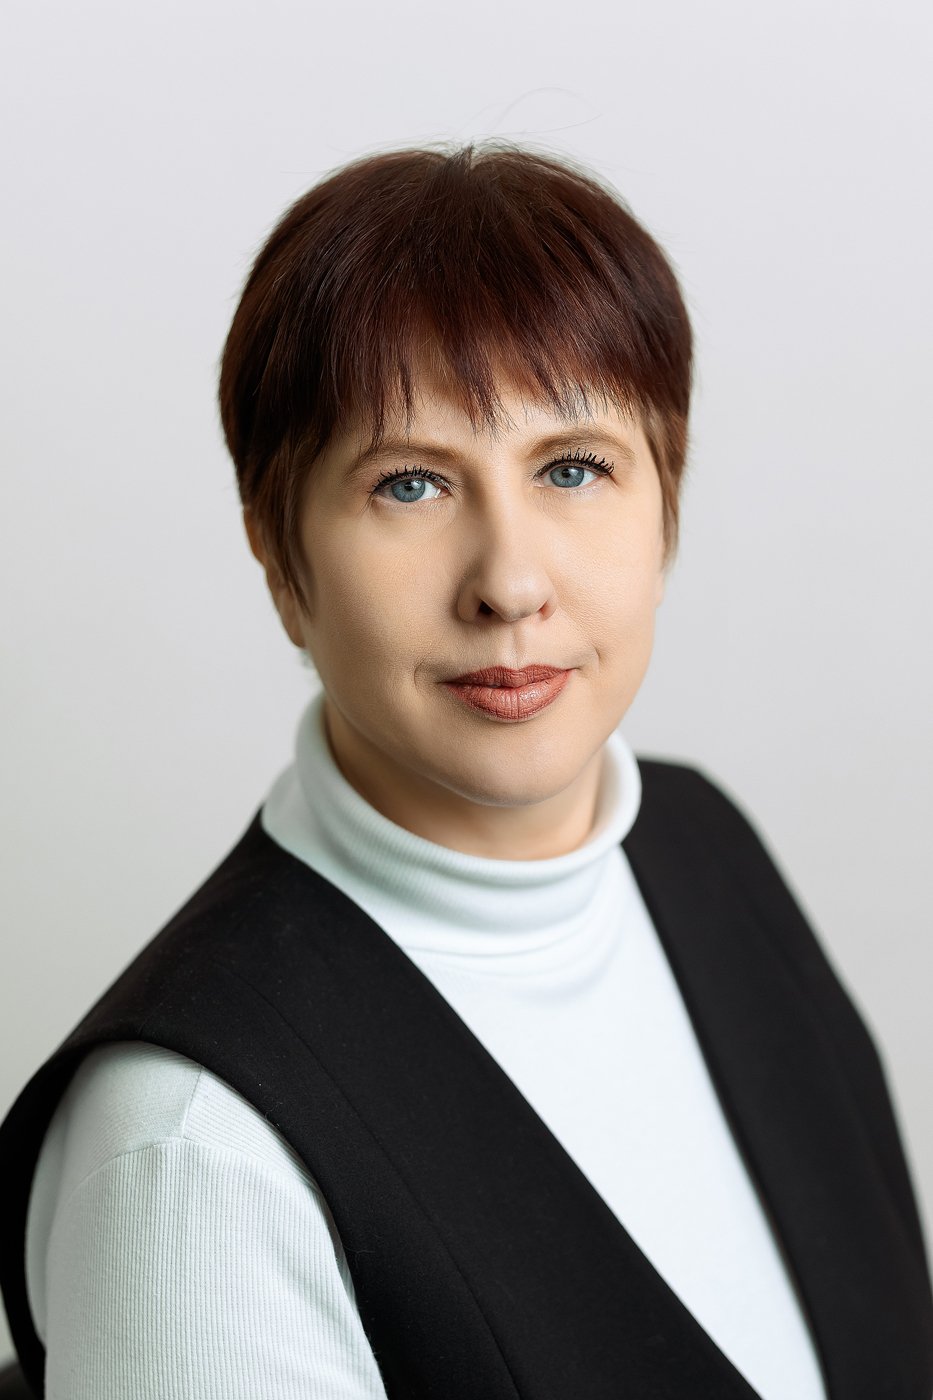 МЕРКУЛОВА Елена Владимировна (01 августа 1972 года).